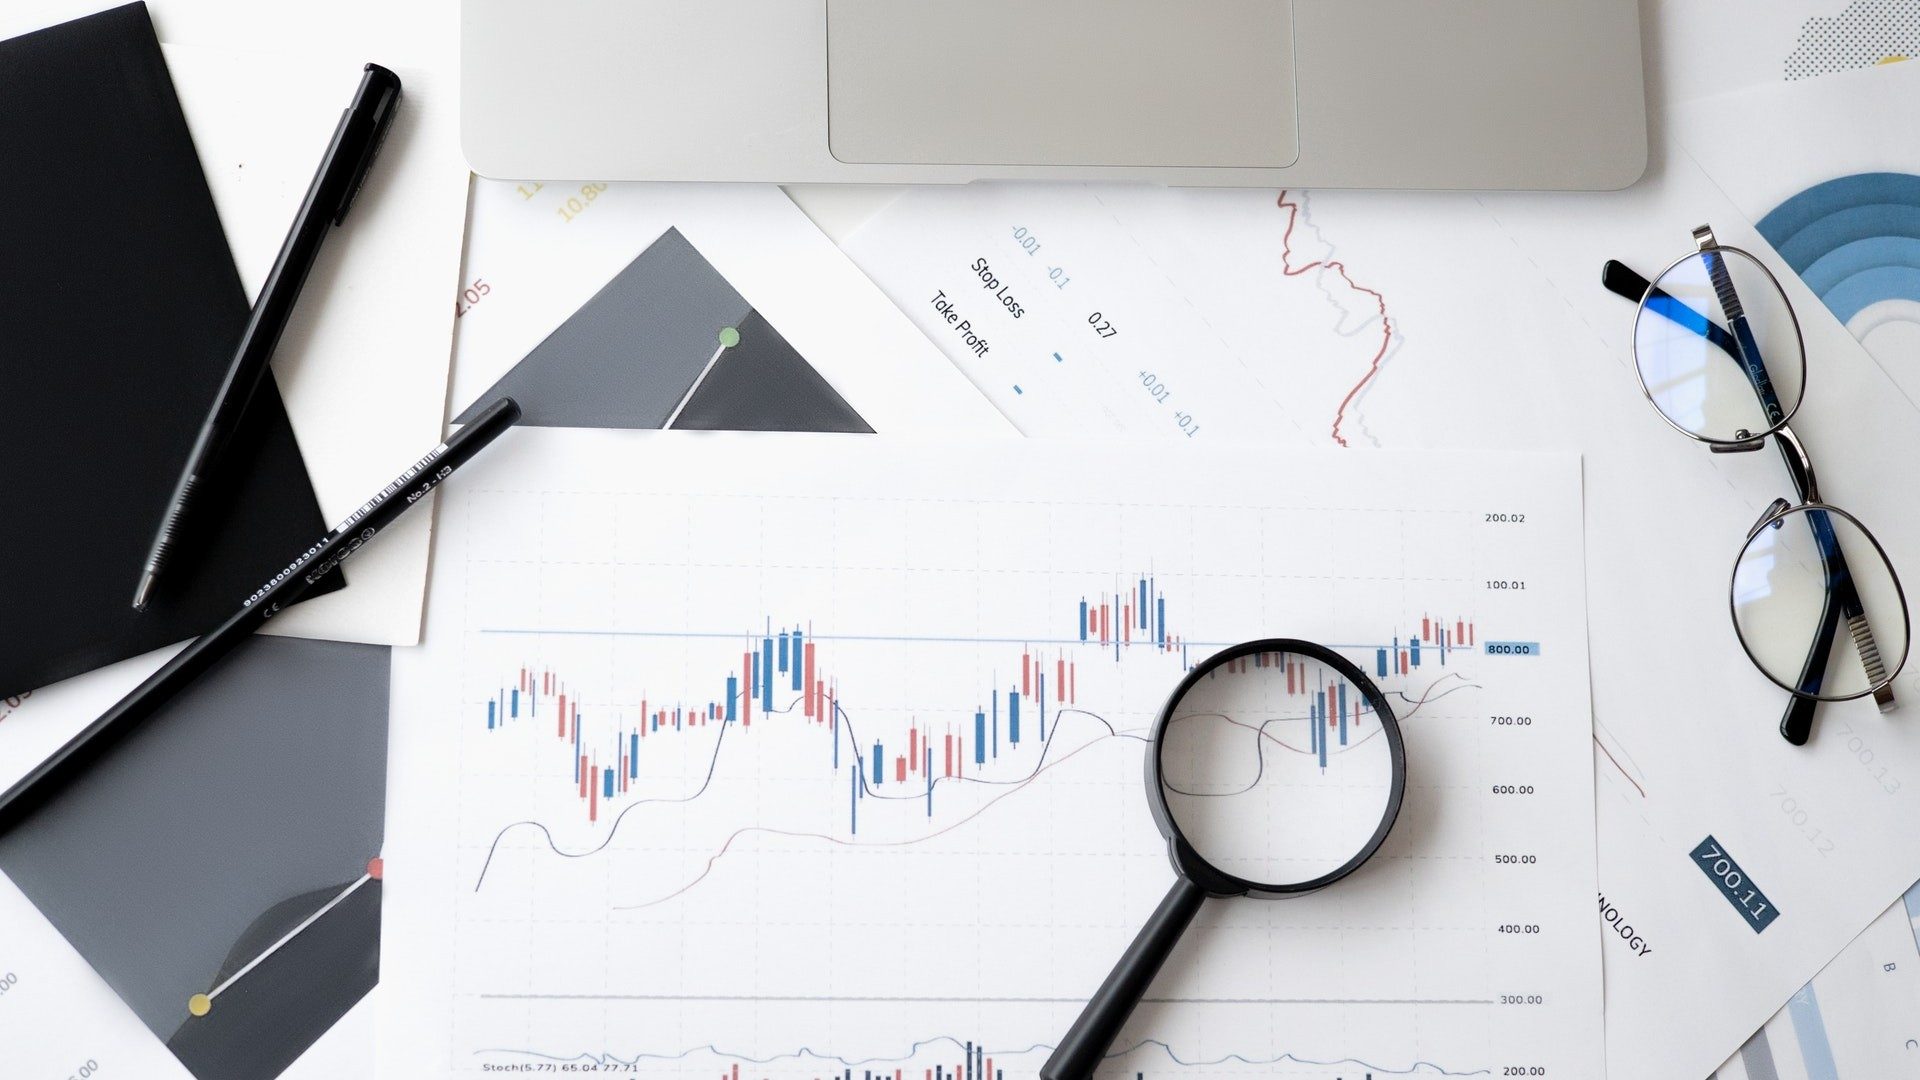 Lupe, Brille und Stifte liegen auf mehreren ausgedruckten Aktien-Charts für die Analyse bereit